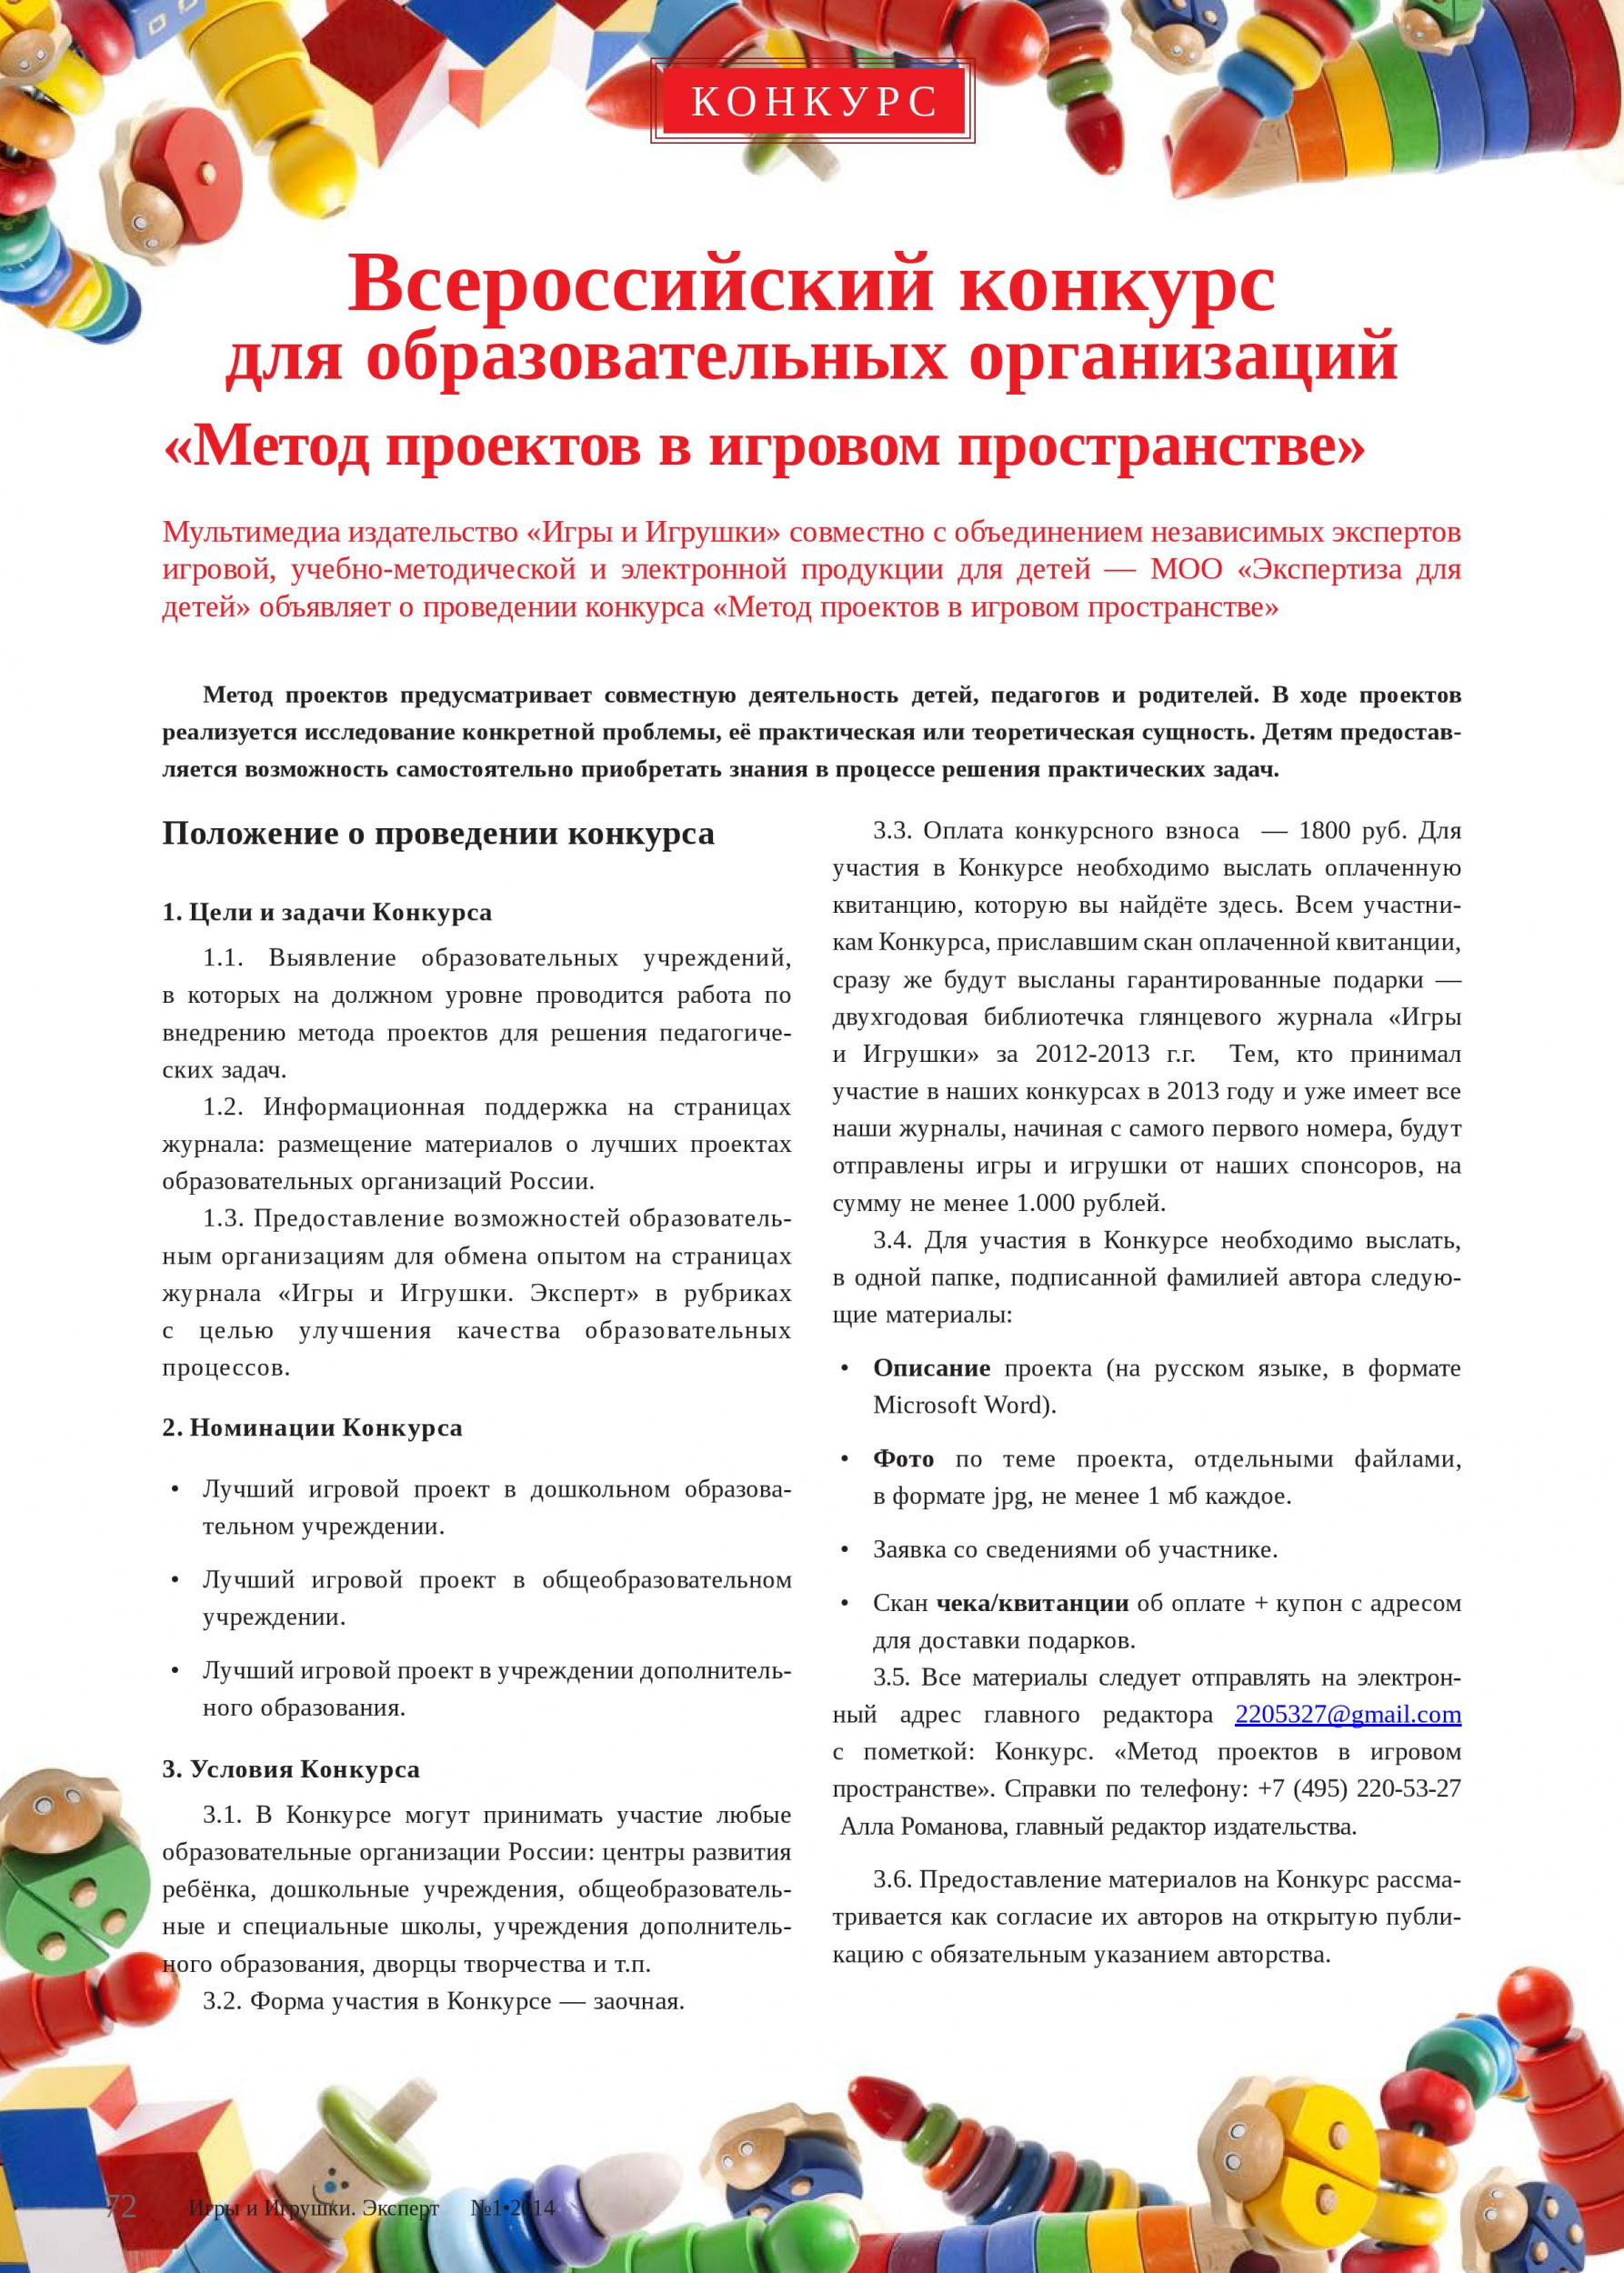 Всероссийский конкурс для образовательных организаций «Метод проектов в игровом пространстве» 